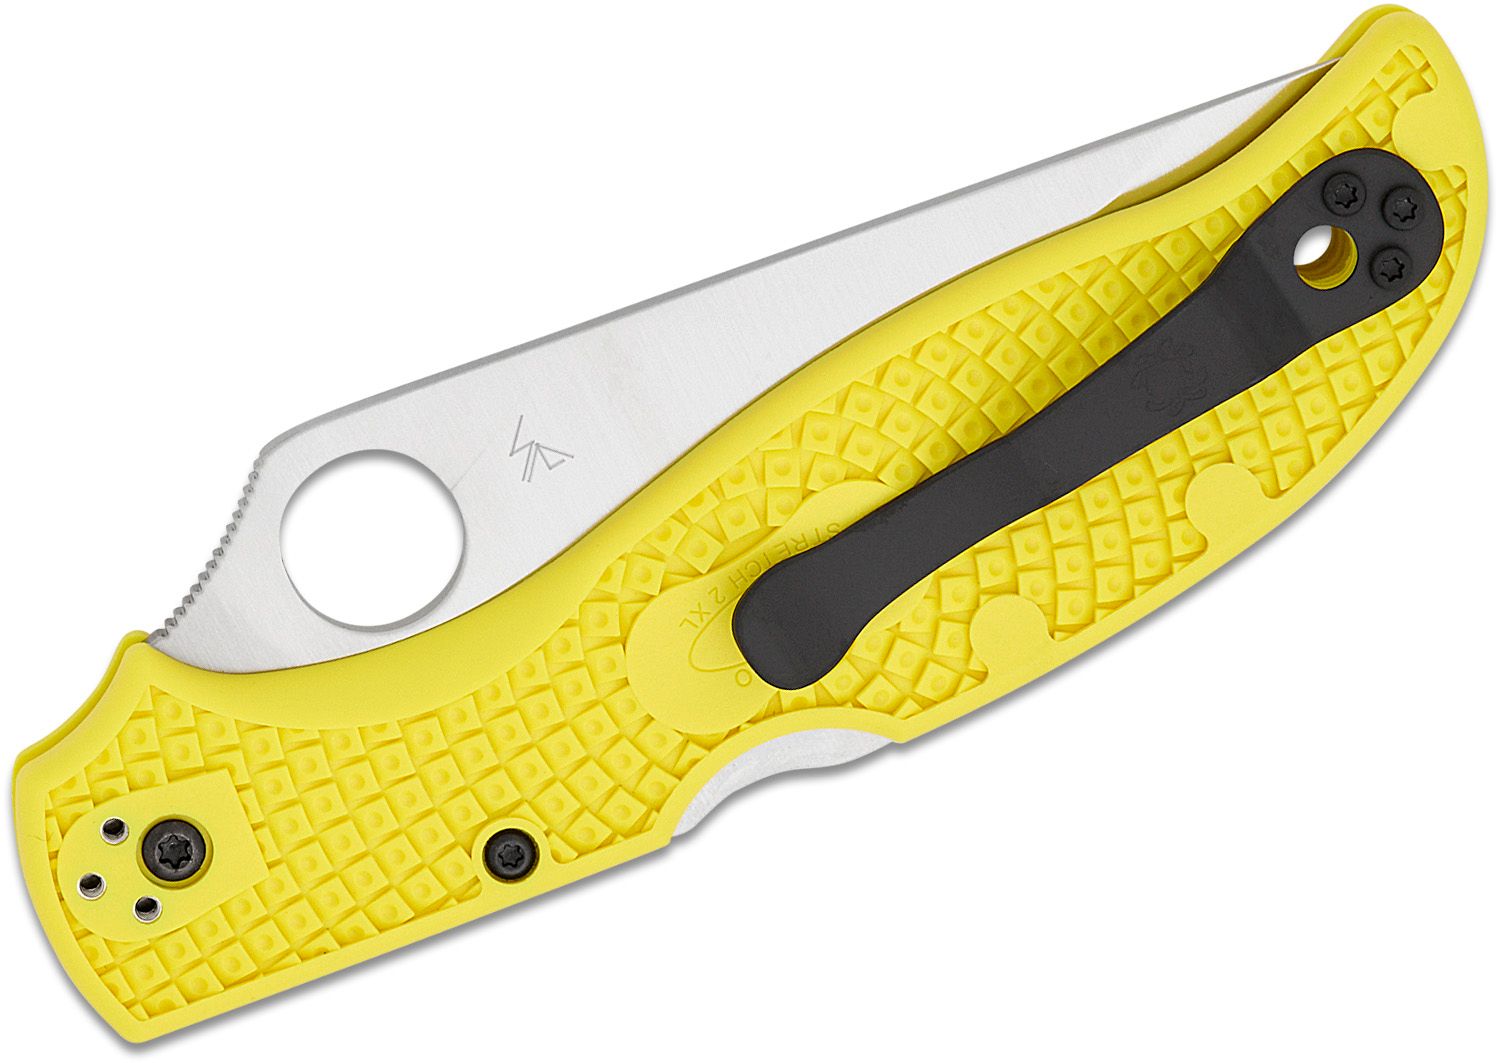 Stretch 2 XL, Serrated Blade, Yellow FRN Handle